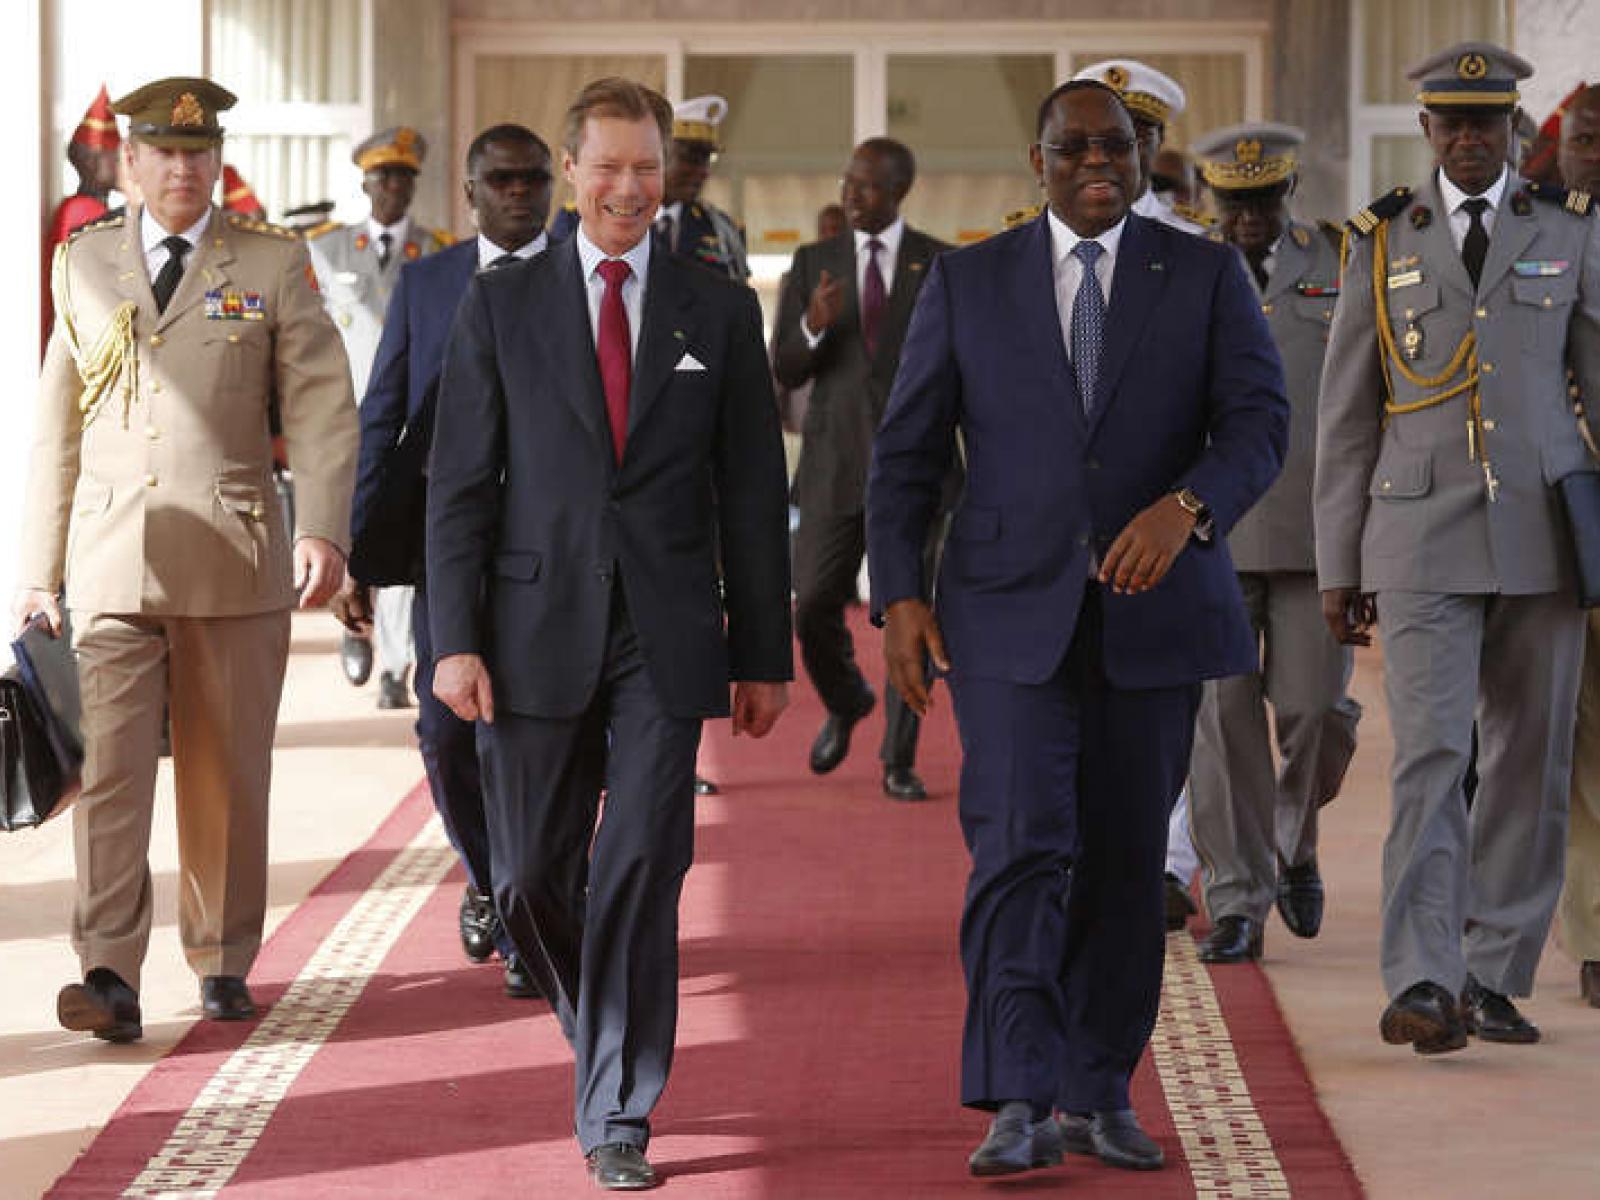 De Grand-Duc an de President Macky Sall bei enger offizieller Visitt vum Grand-Duc am Senegal am Januar 2018